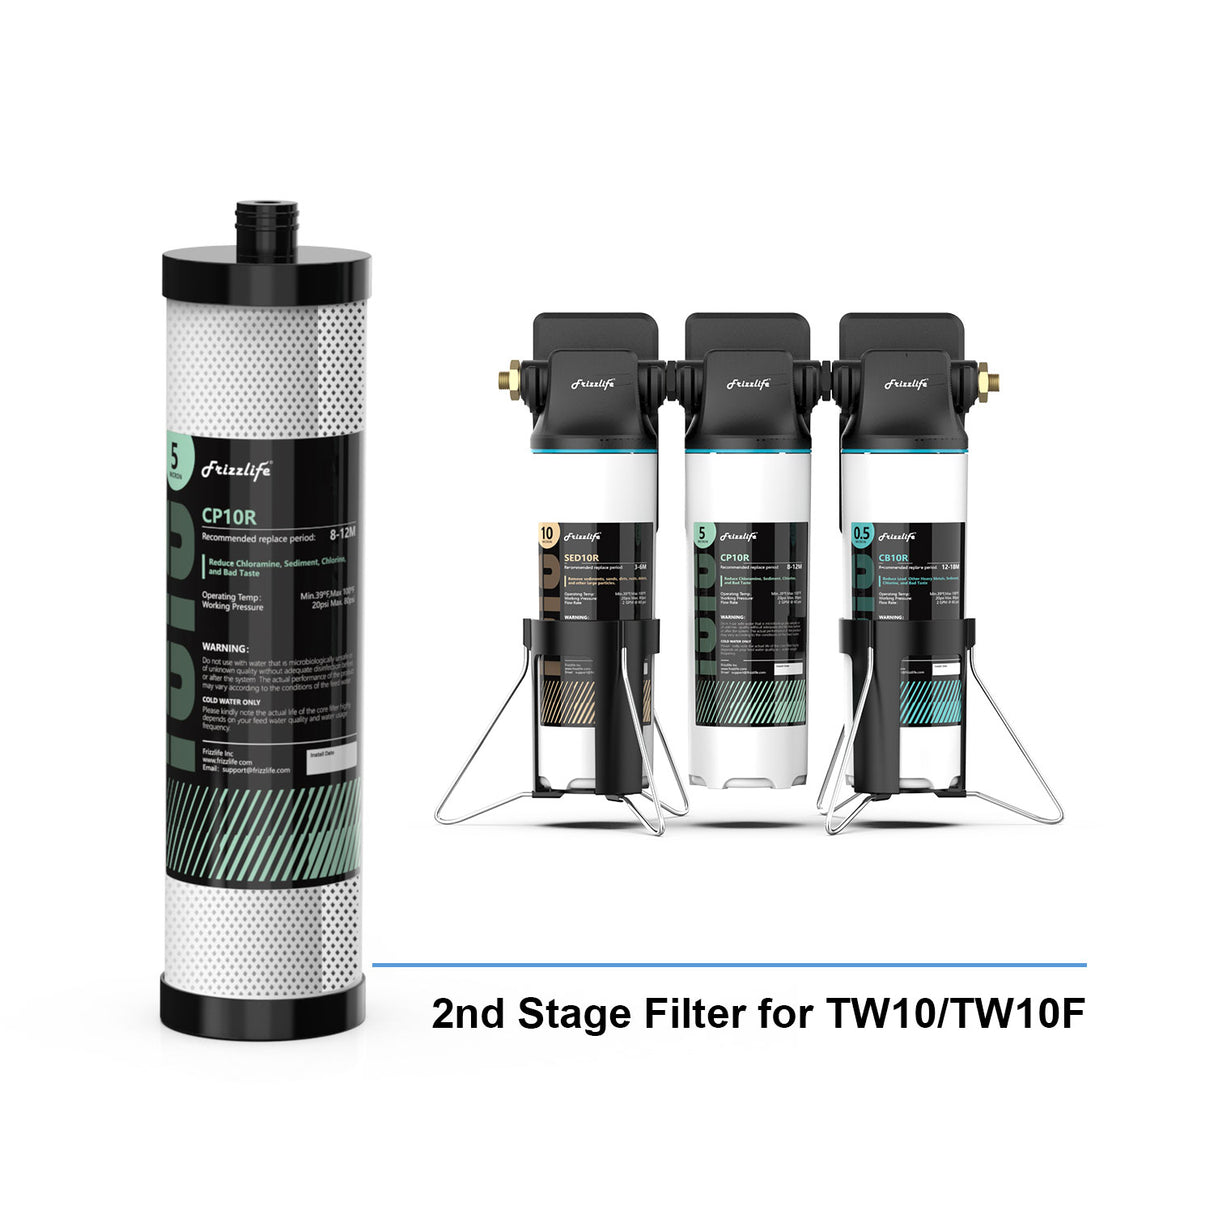 Cartucho de filtro de repuesto Frizzlife CP10R (2.ª etapa) para filtro de agua debajo del fregadero TW10